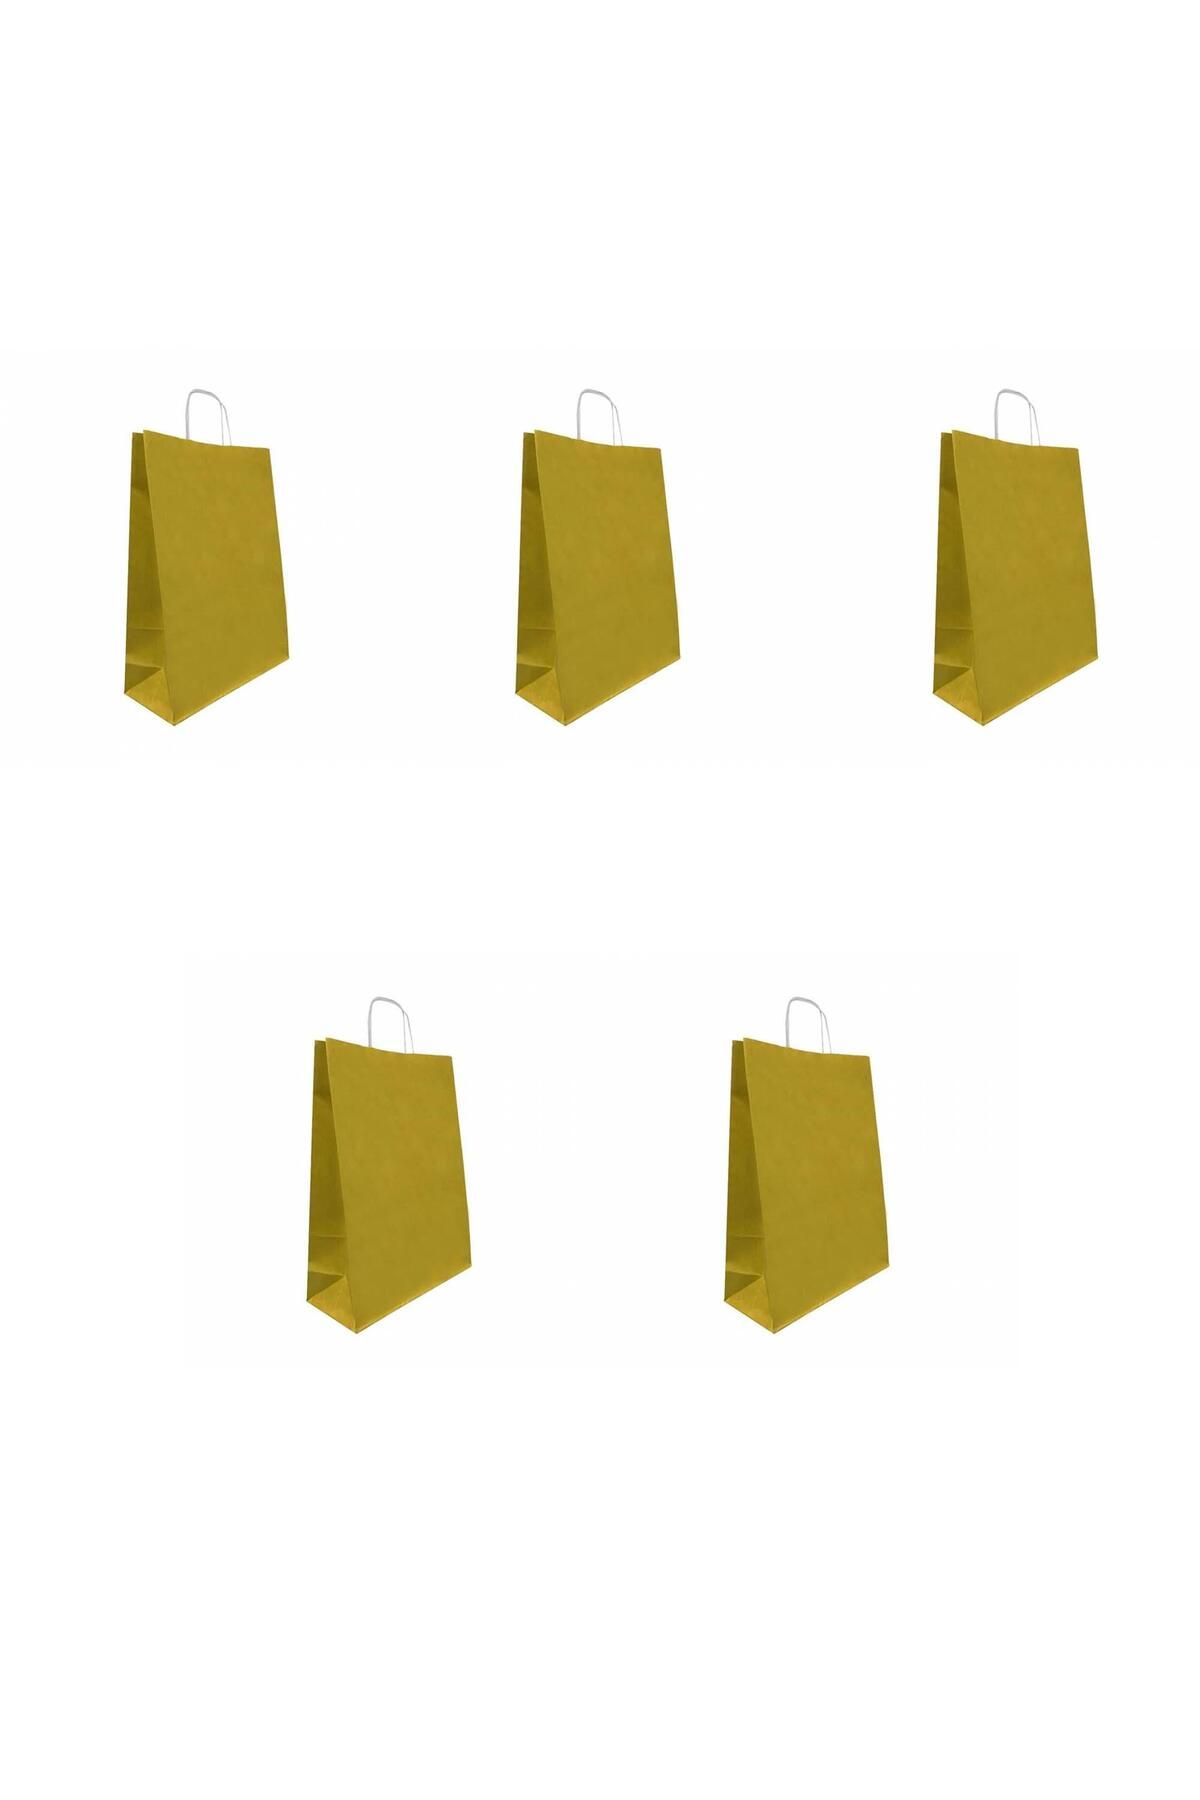 Roll Up Büküm Saplı Kraft Kağıt Çanta Karton Hediyelik Poşet Torba - Altın Sarı-18x24 Cm. - 5 Adetlik Paket